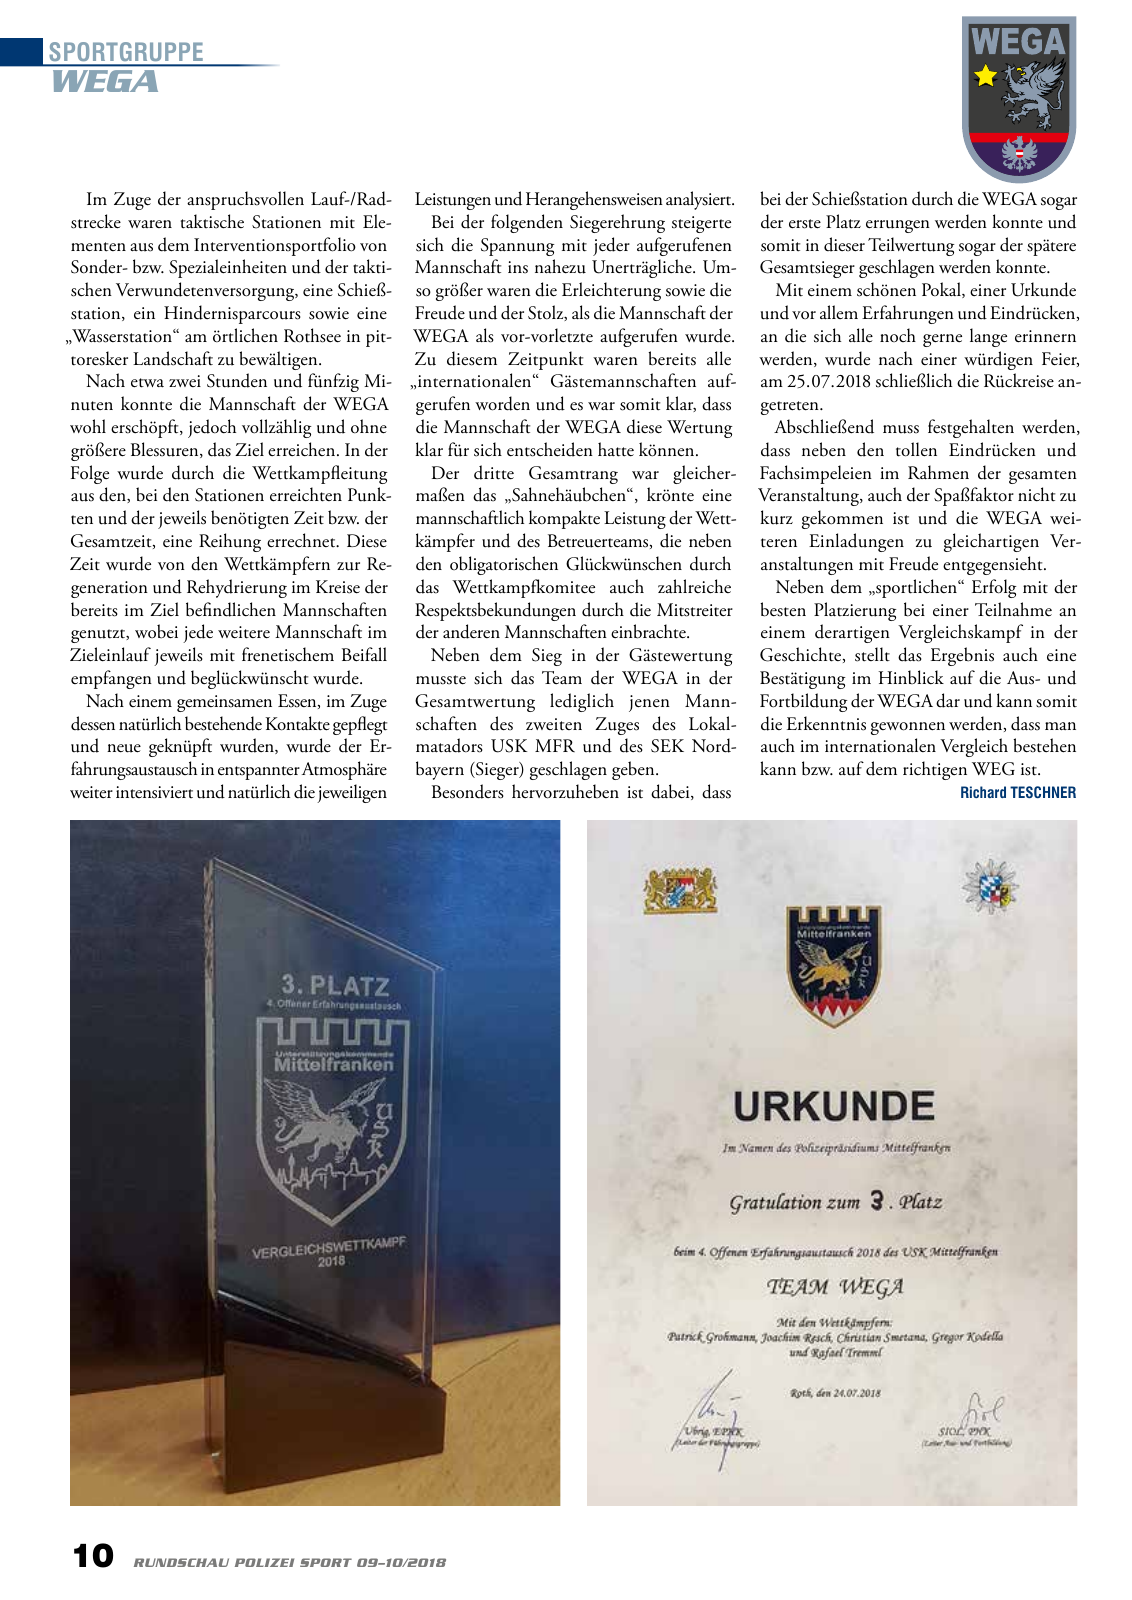 Vorschau Rundschau Polizei Sport 09-10/2018 Seite 10